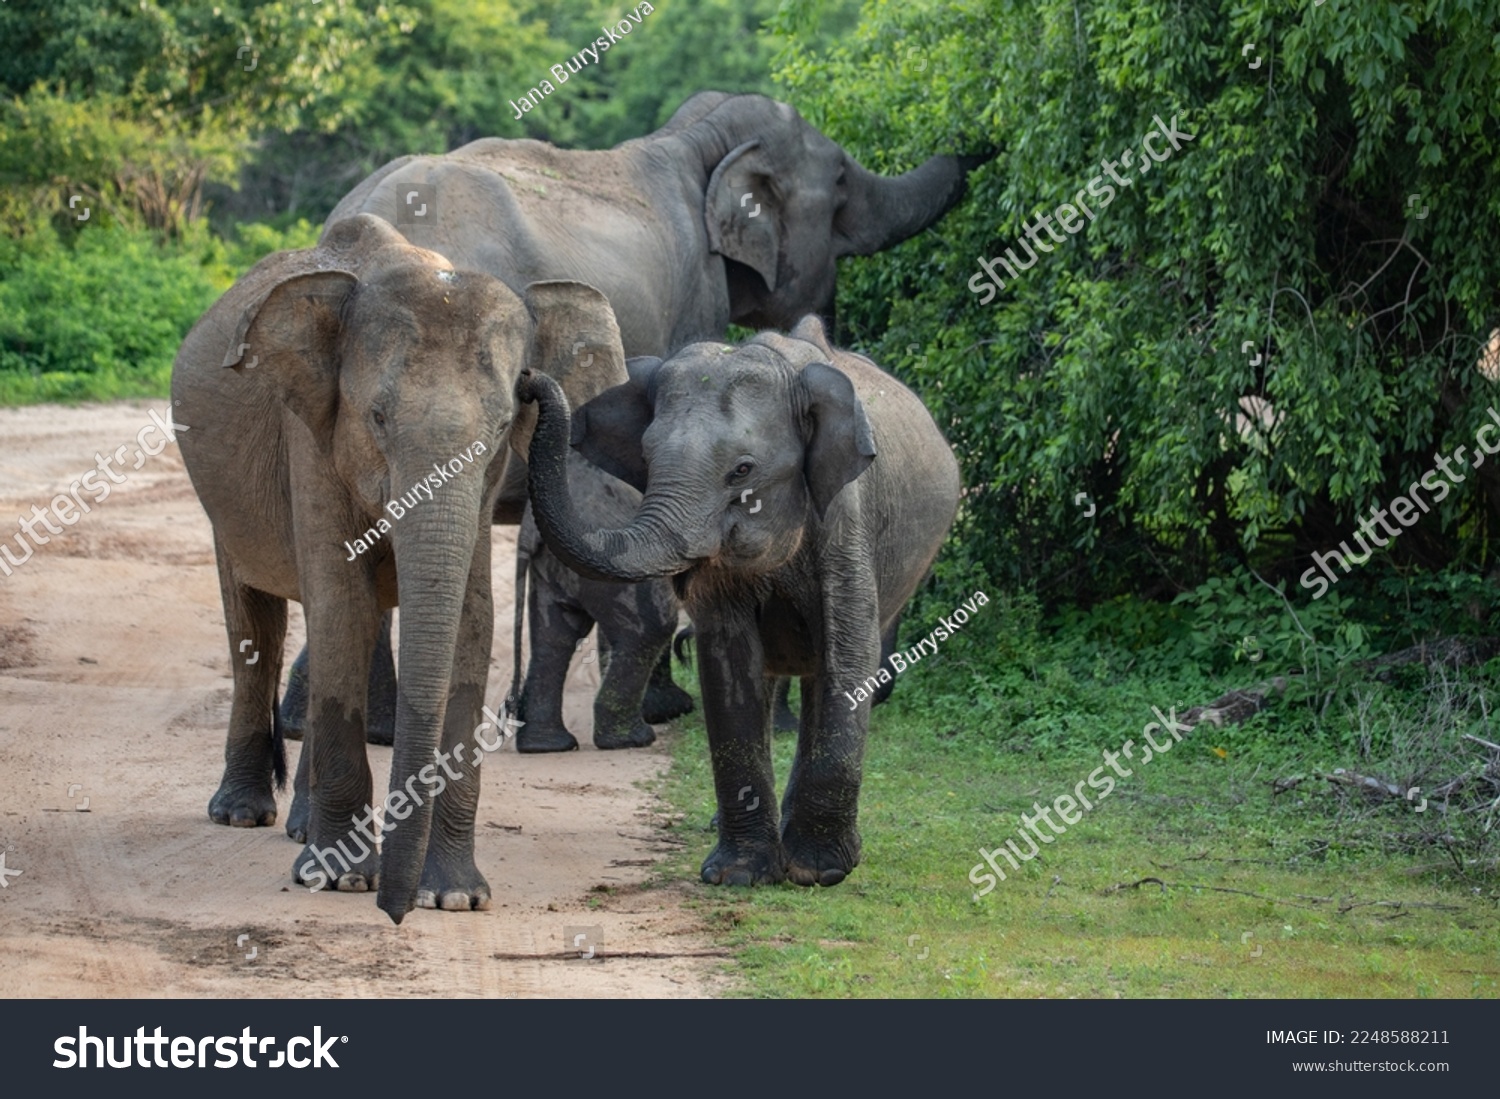 Elephant in Yala National park in Sri Lanka #2248588211